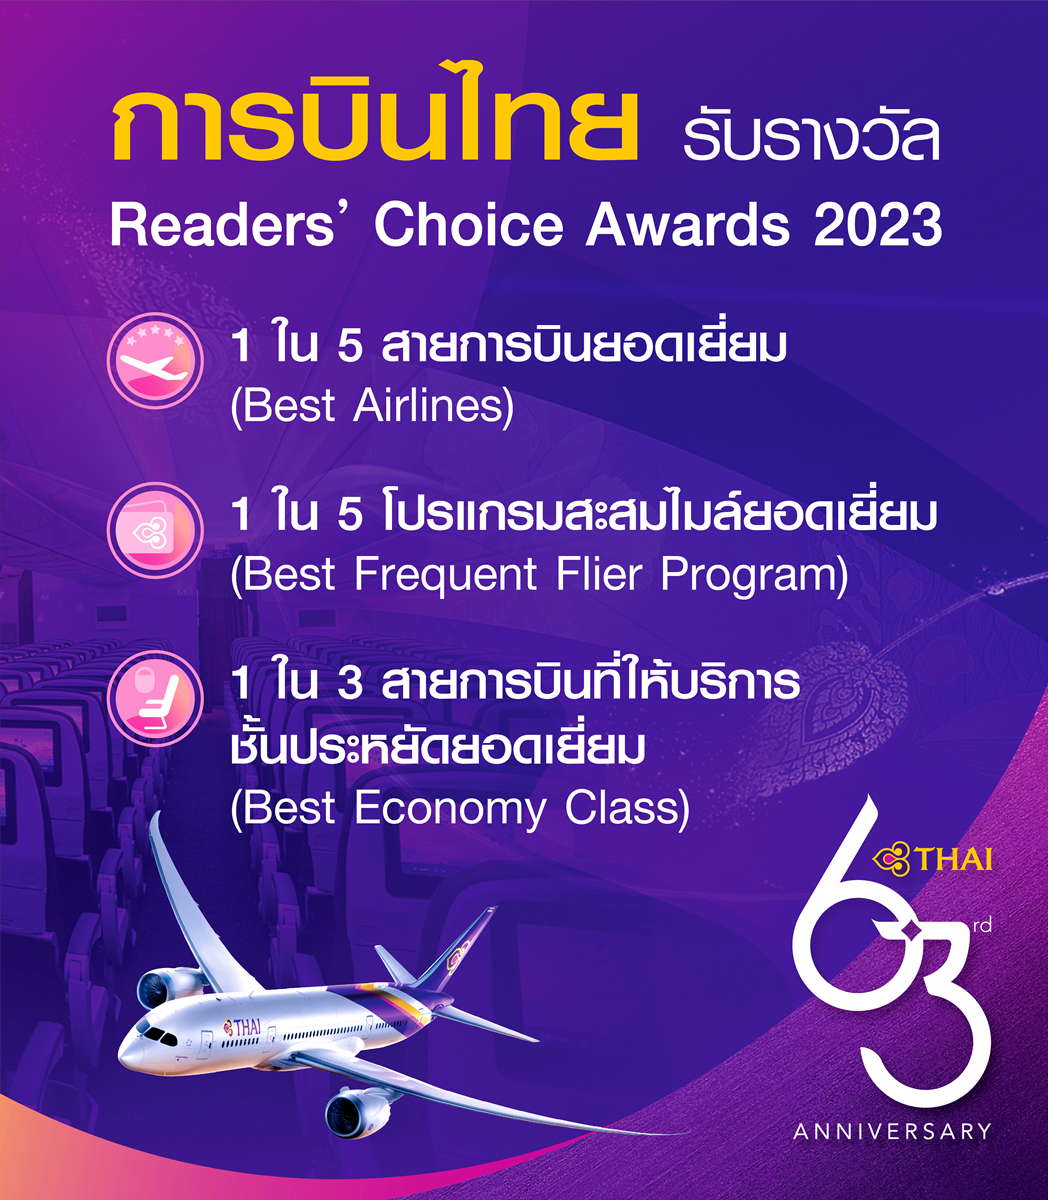 การบินไทยรับรางวัล 1 ใน 5 สายการบินยอดเยี่ยม โปรแกรมสะสมไมล์ยอดเยี่ยม และสายการบินที่ให้บริการชั้นประหยัดยอดเยี่ยม จาก DestinAsian Readers' Choice Awards 2023